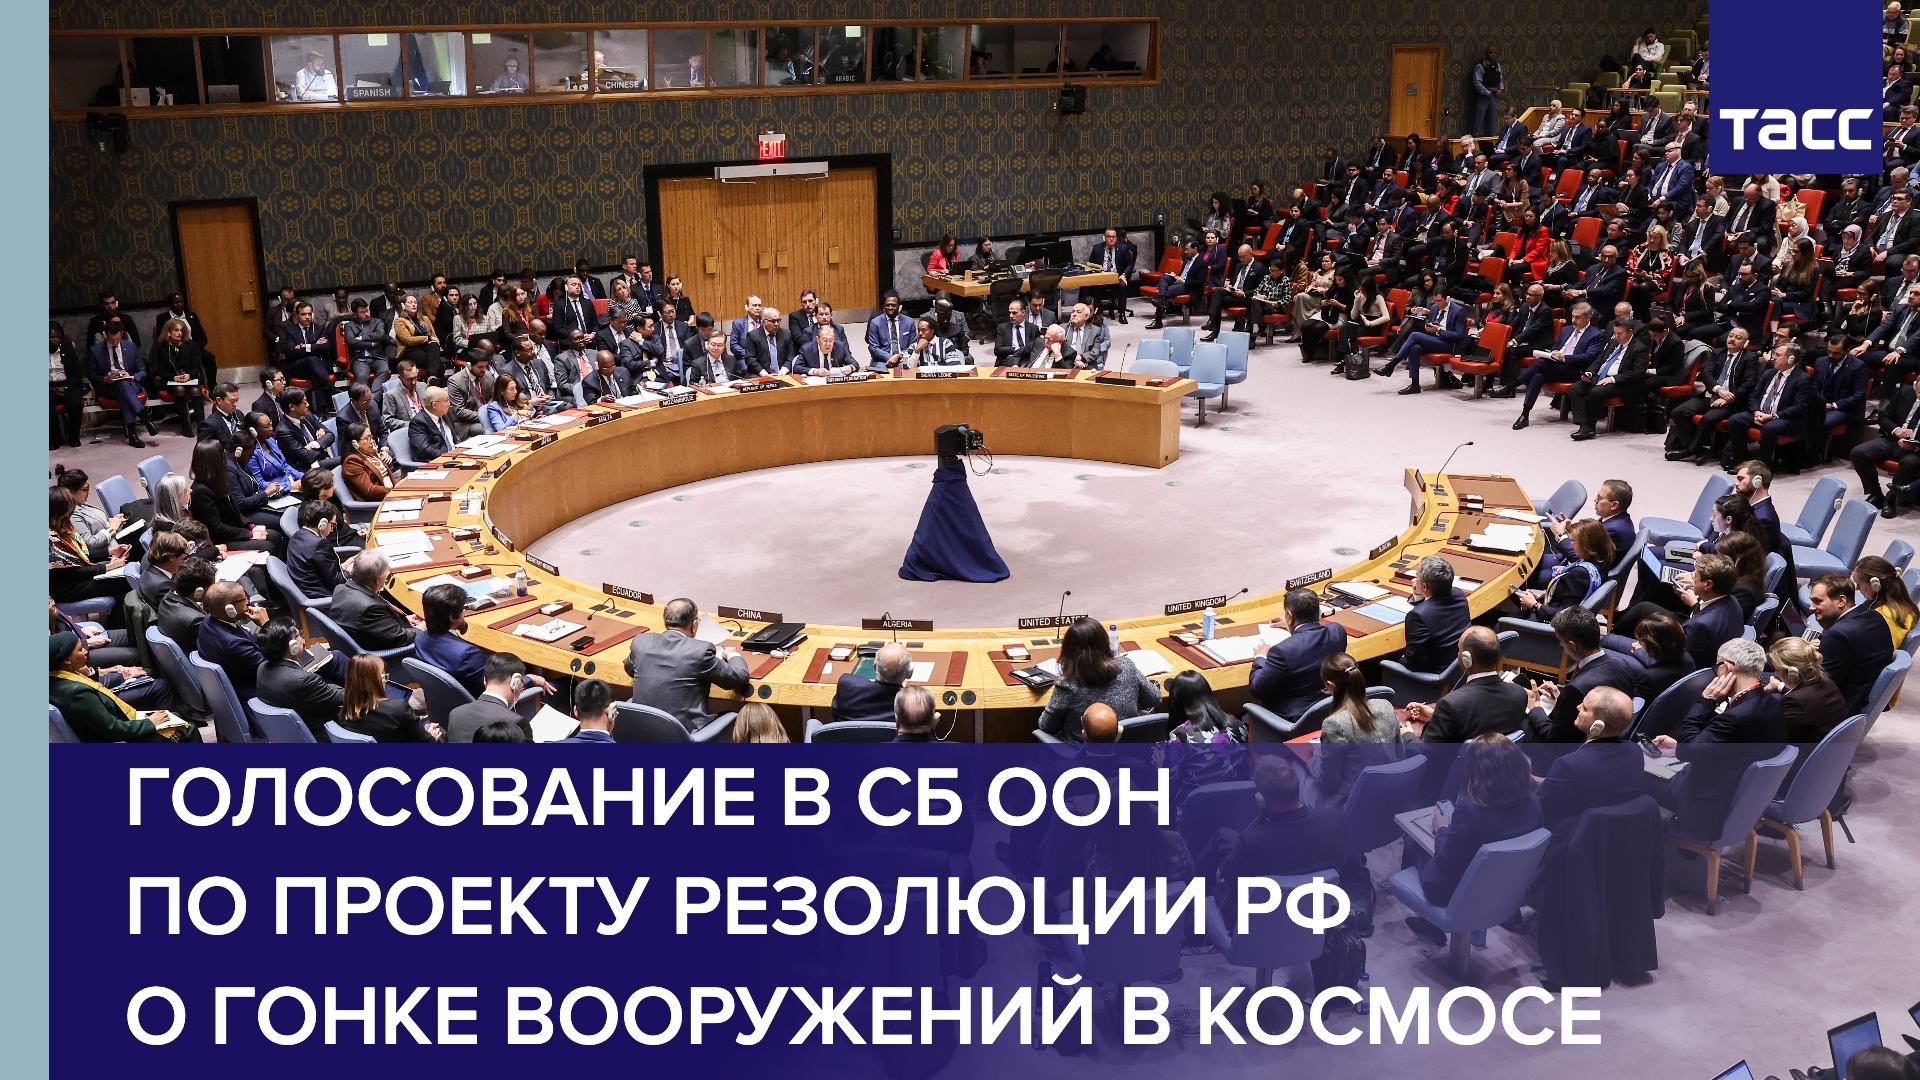 Голосование в СБ ООН по проекту резолюции РФ о гонке вооружений в космосе